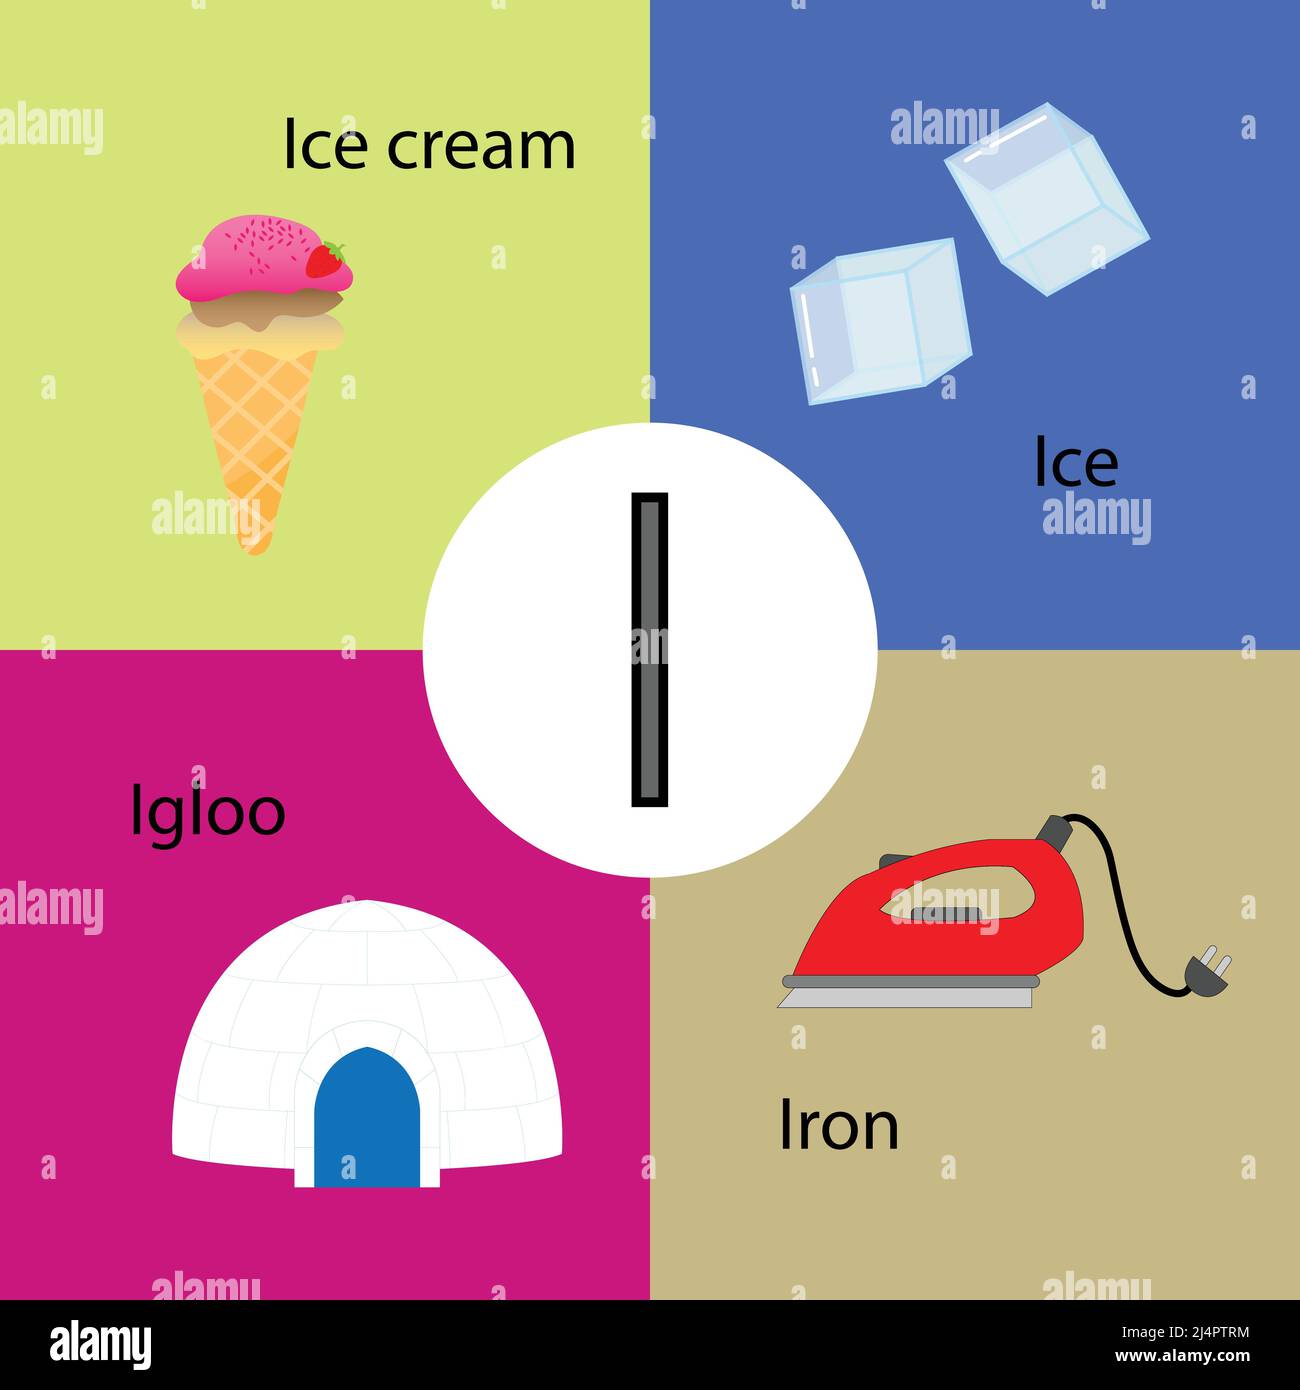 Vector ilustración de dibujos animados aislados de letra del alfabeto  inglés I con imagen de helado, hielo, iglú y hierro Imagen Vector de stock  - Alamy